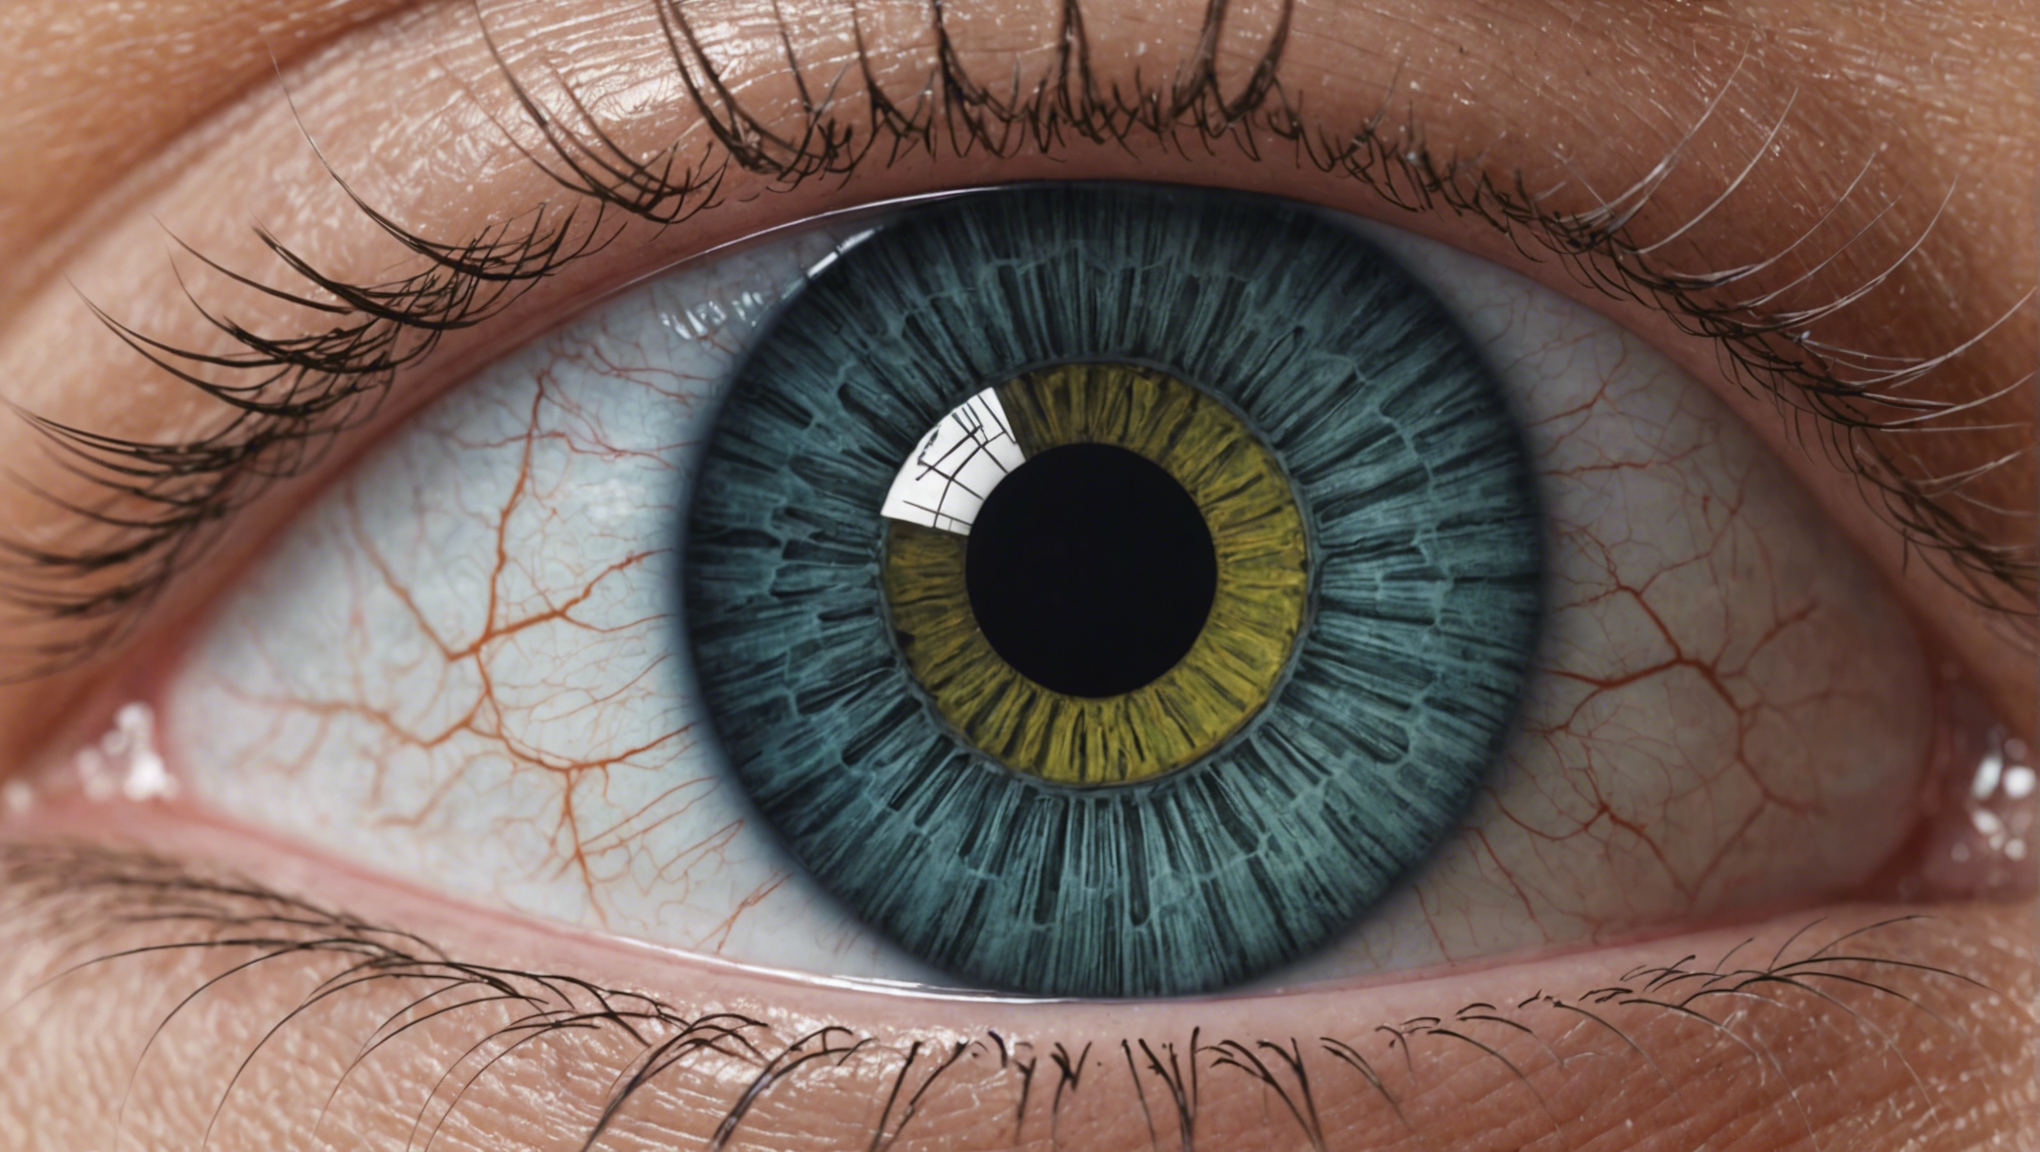 découvrez comment la chirurgie de la cataracte peut transformer votre vision et améliorer votre qualité de vie. obtenez une vision plus claire et vive grâce à cette procédure médicale révolutionnaire.